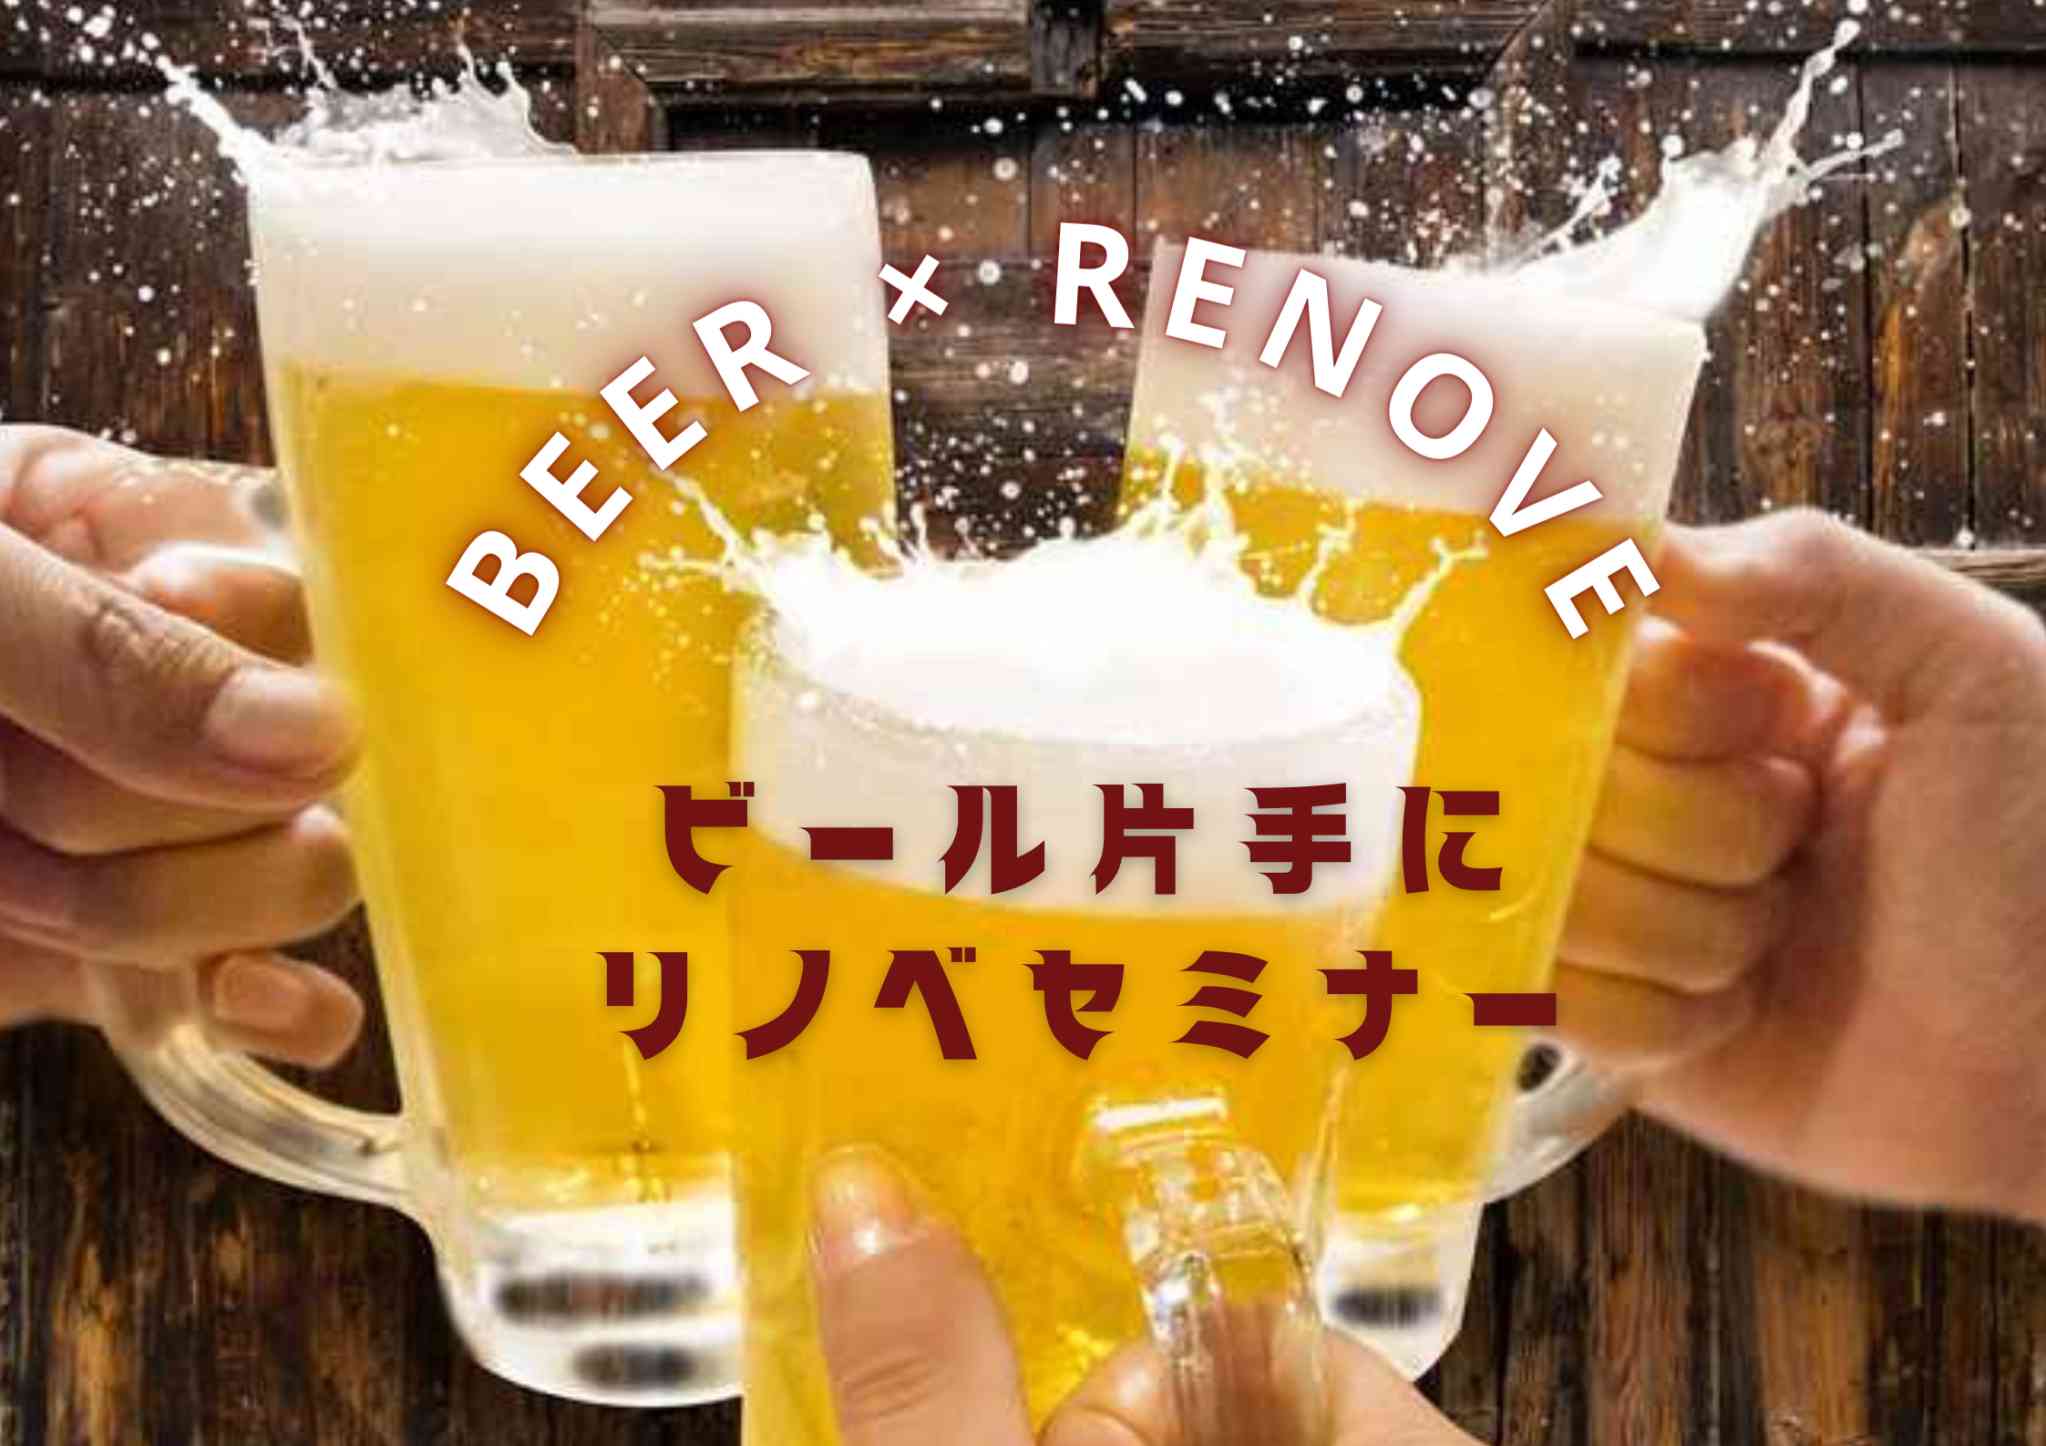 【 BEER × Renovation 】 ビール片手に、リノベーションセミナー